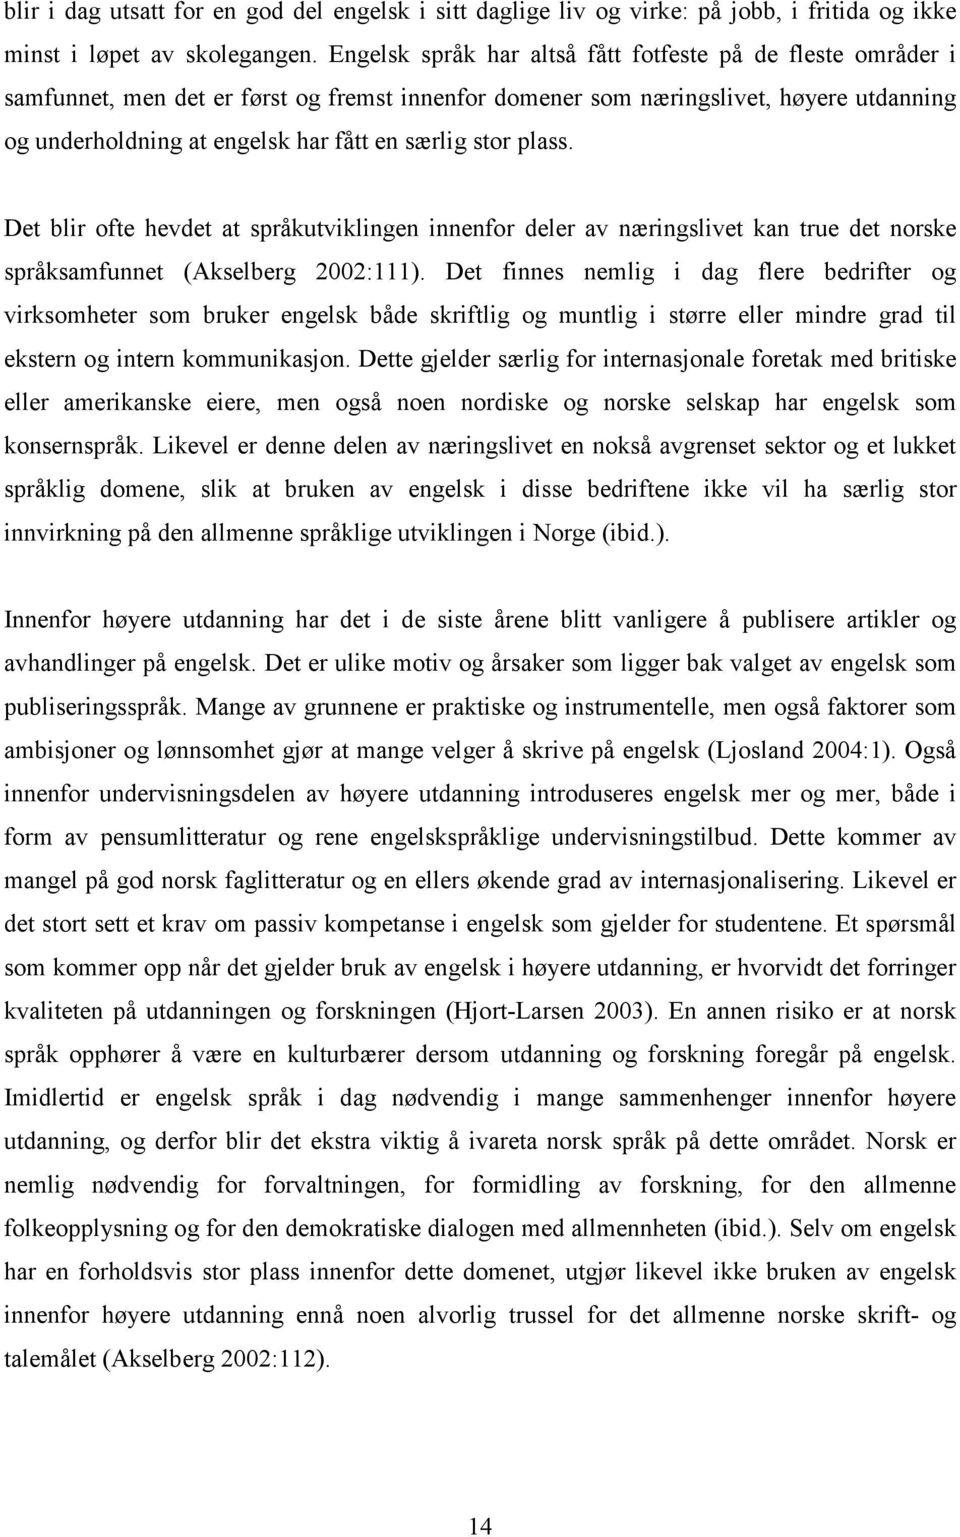 stor plass. Det blir ofte hevdet at språkutviklingen innenfor deler av næringslivet kan true det norske språksamfunnet (Akselberg 2002:111).